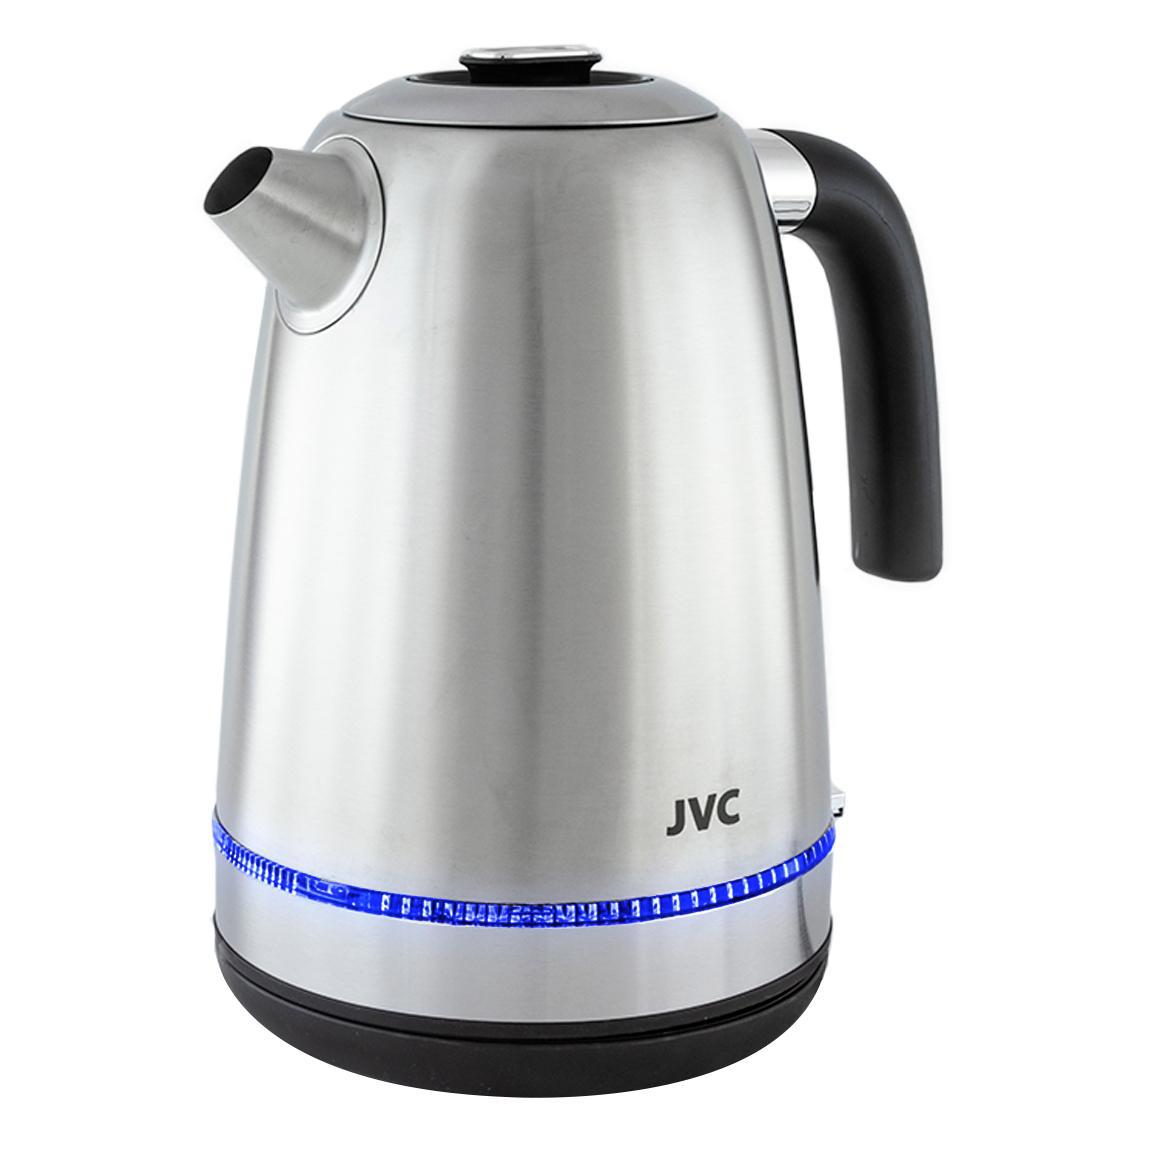 90445900 Электрический чайник JK-KE1720 1.7 л металл цвет черный, серебристый STLM-0225296 JVC